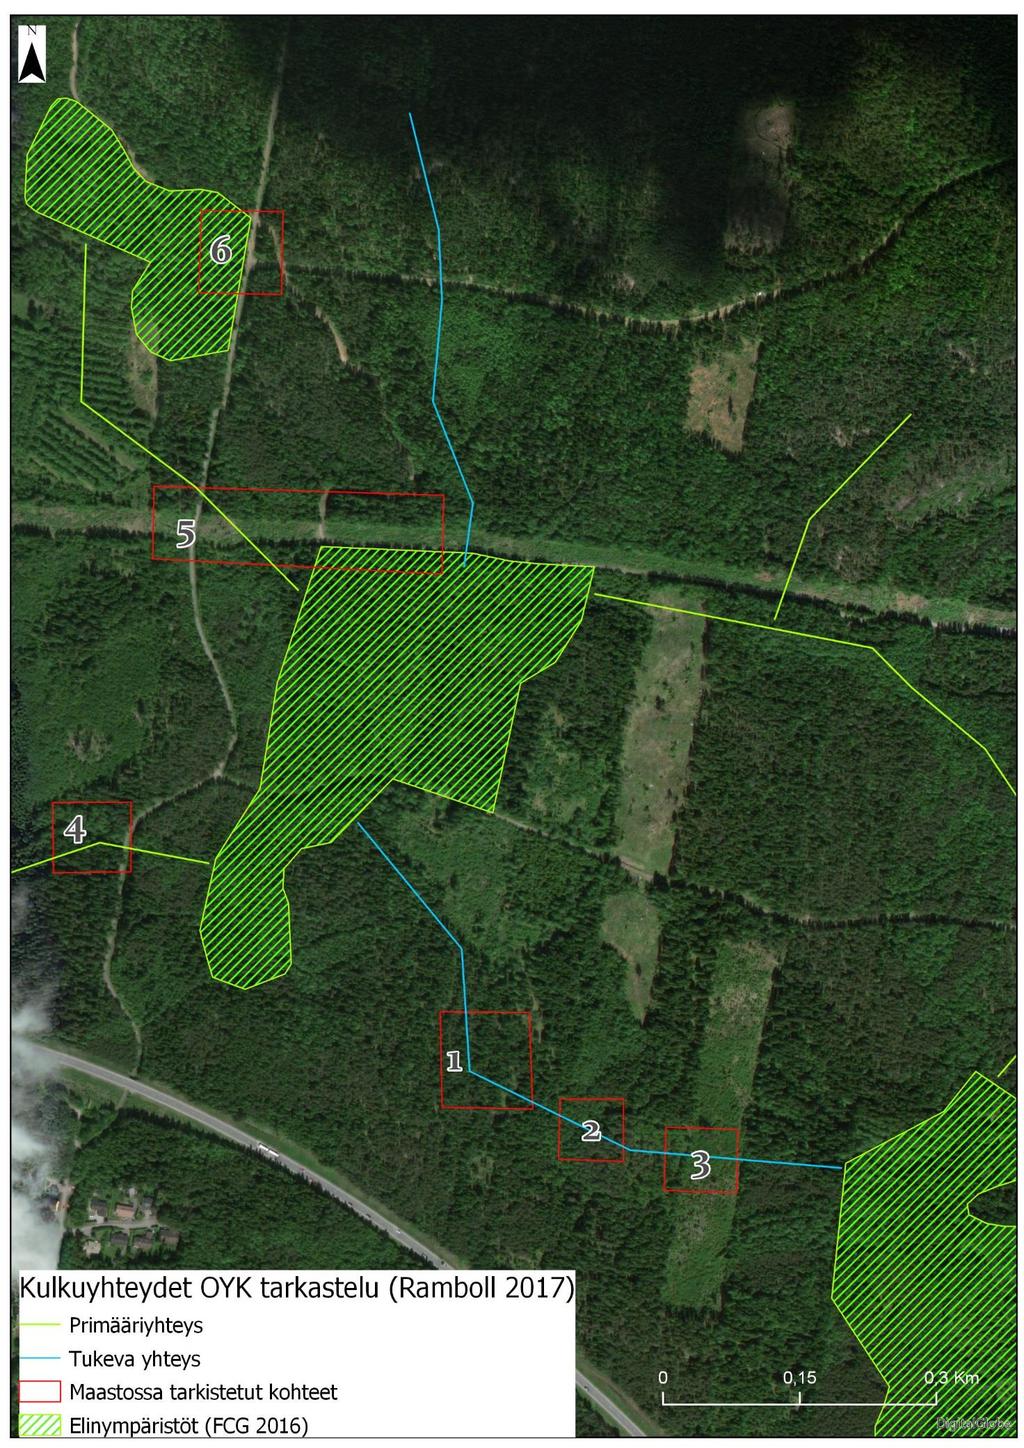 LIITTEET LIITE 1: Kartassa on esitetty Lamminrahkan hankesuunnitelmaan liittyvän liito-oravan kulkuyhteyksien